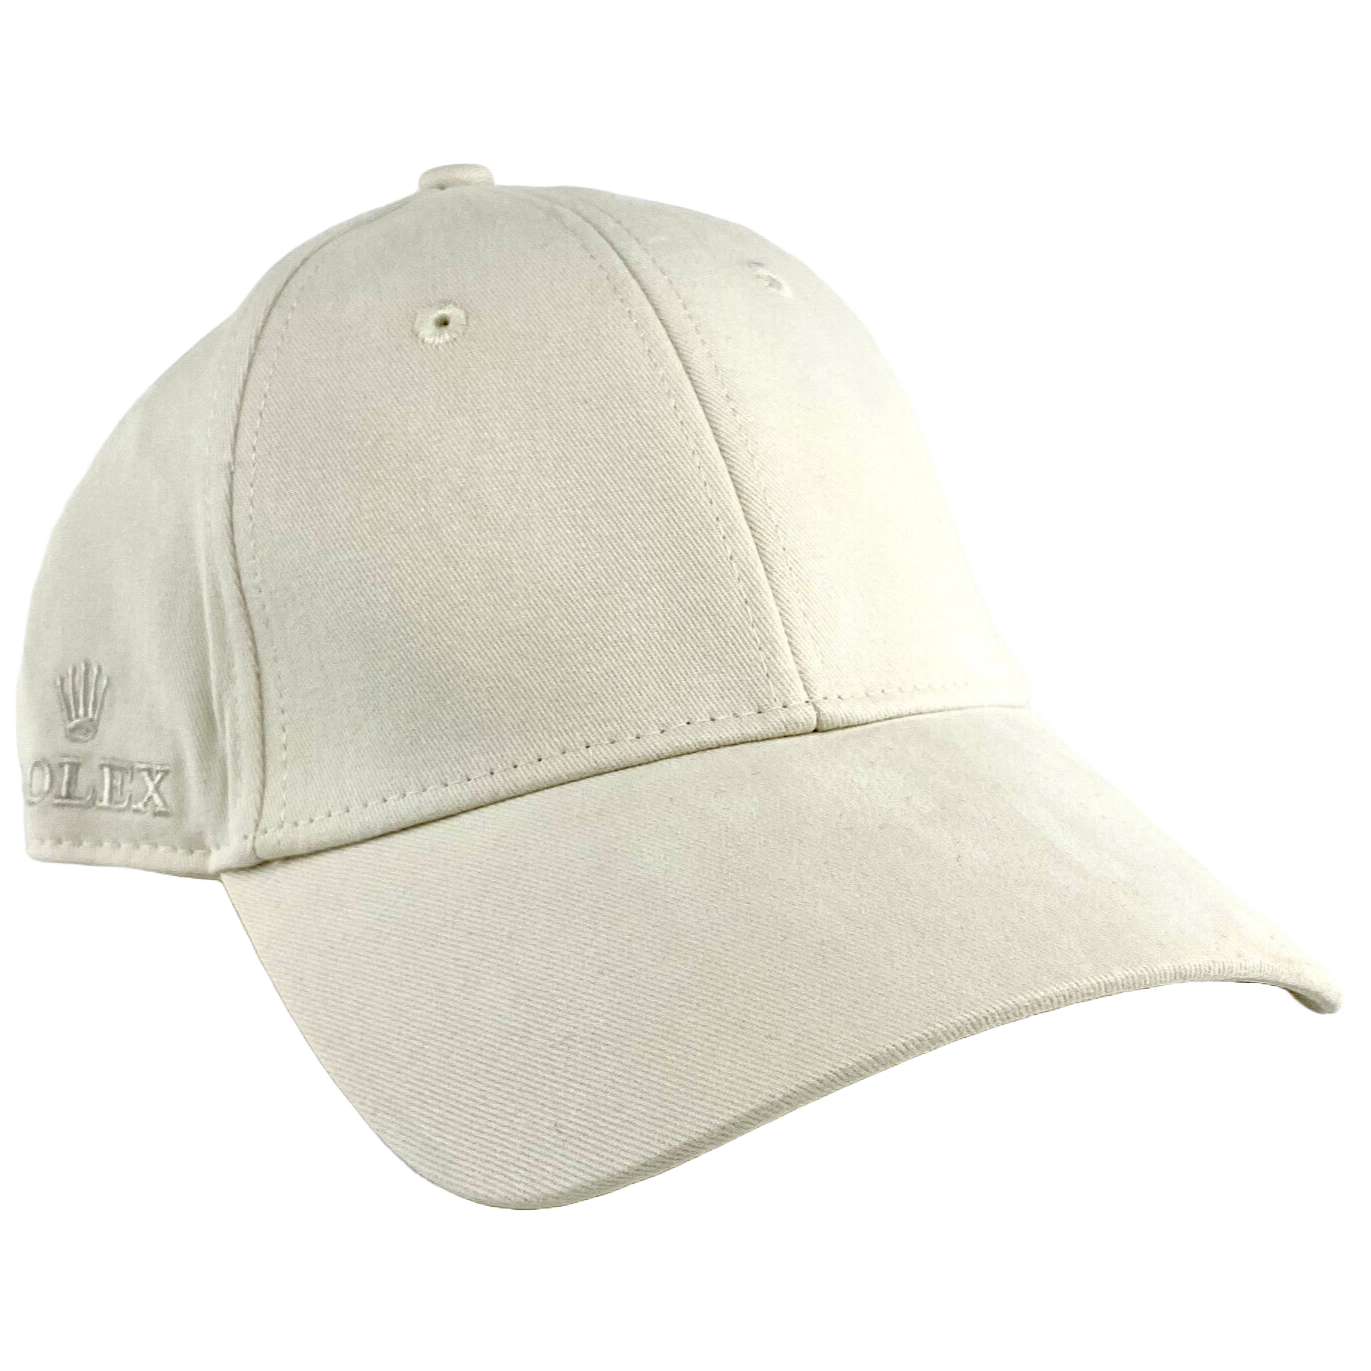 Rolex Cap Kappe Mütze Hat Baseballhat Hut Weiß White